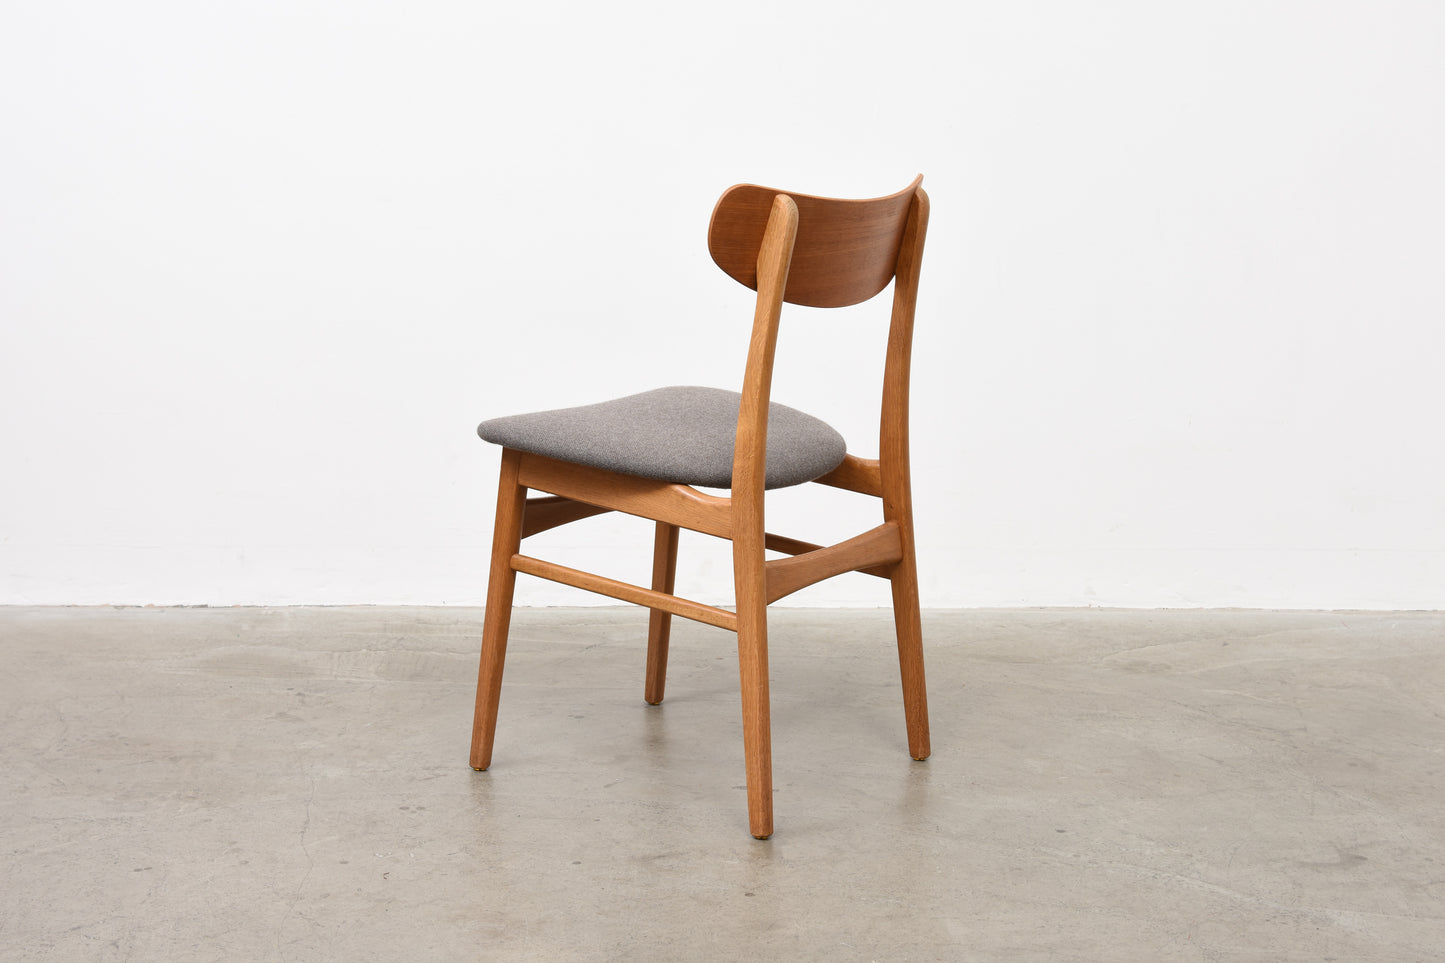 Set of teak + oak chairs by Farstrup